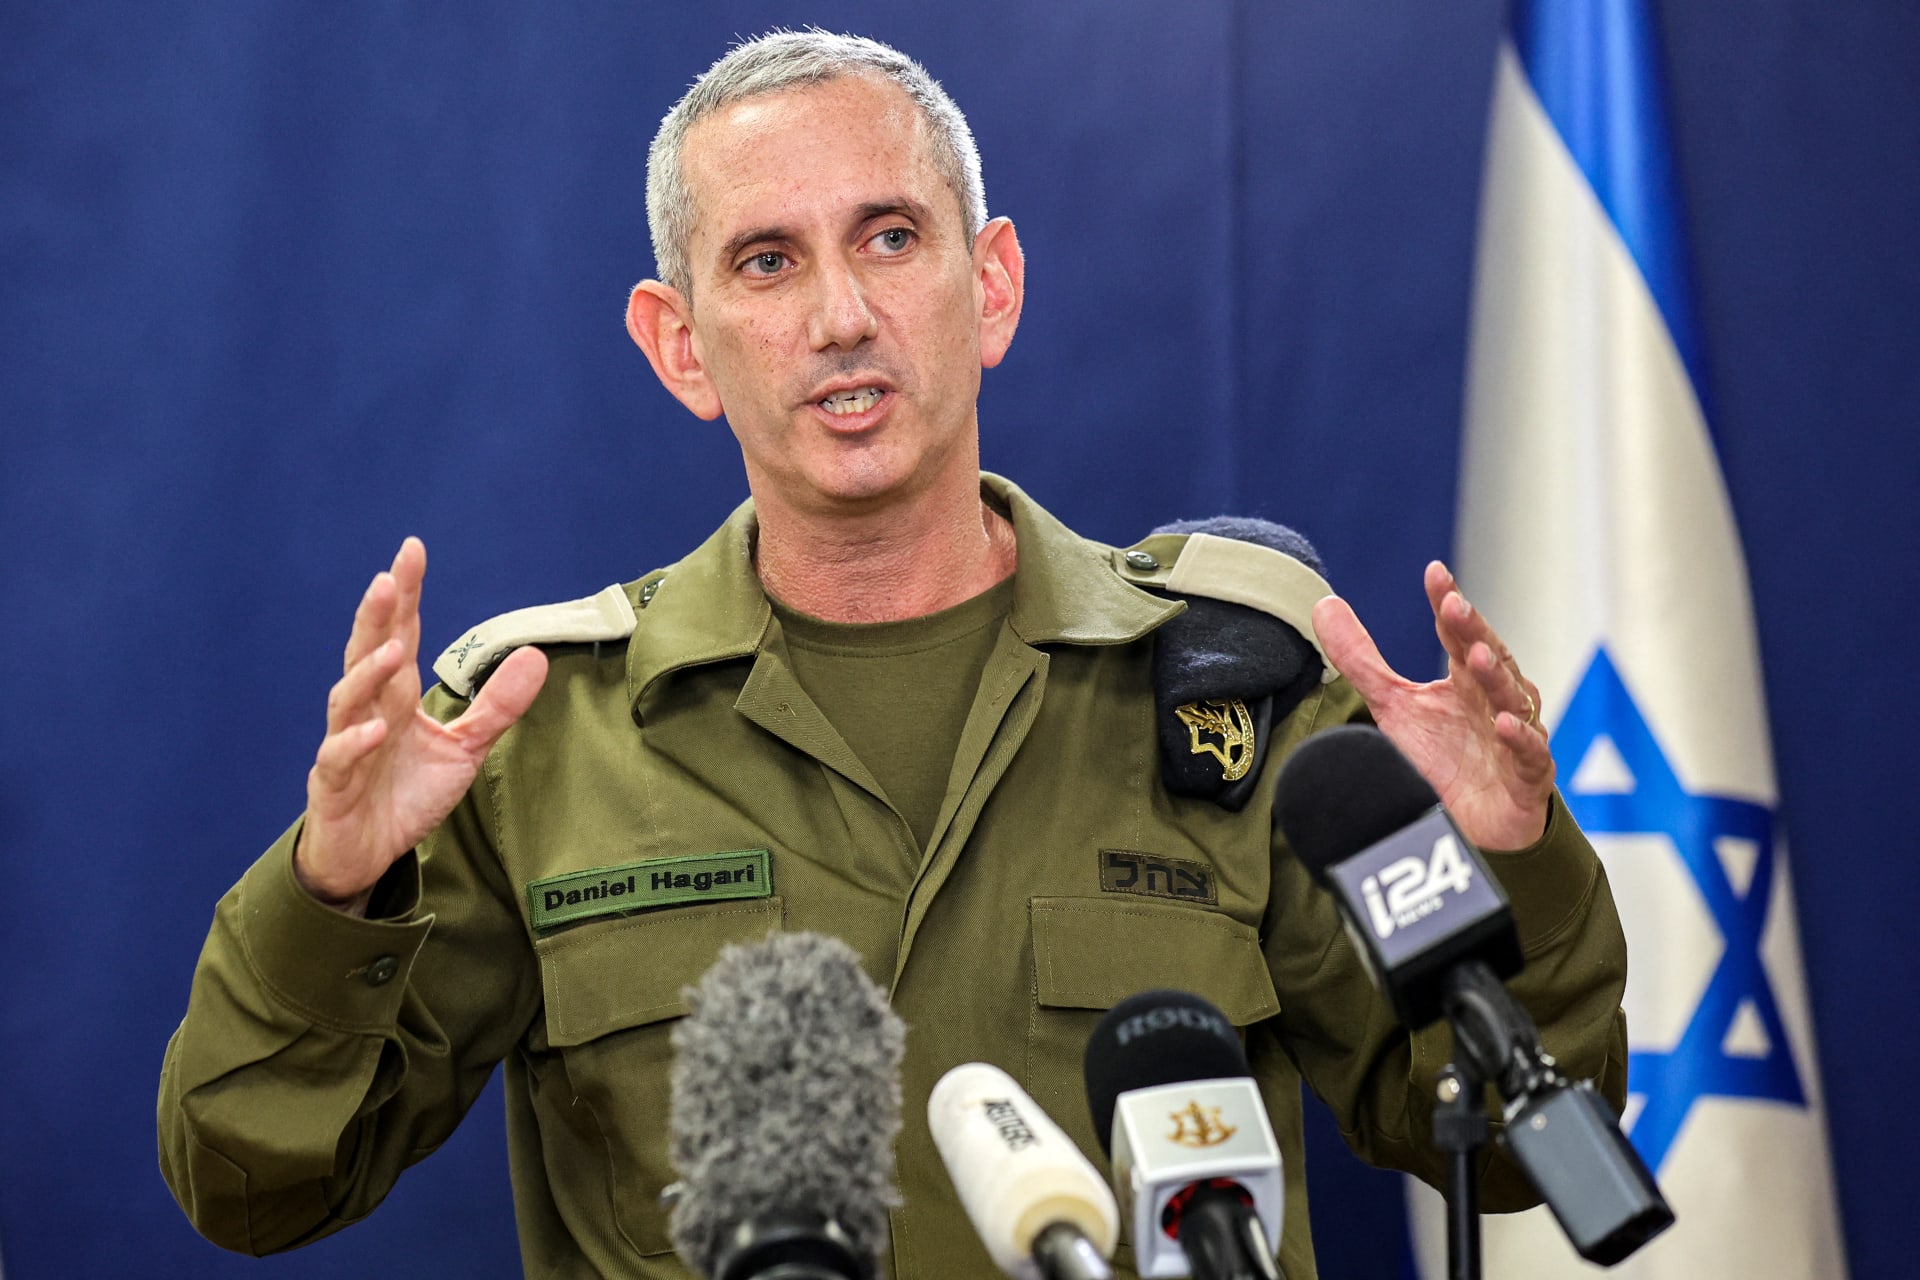 إسرائيل ترفع حالة التأهب.. ومتحدث الجيش الإسرائيلي: إيران أطلقت "درونز" باتجاهنا